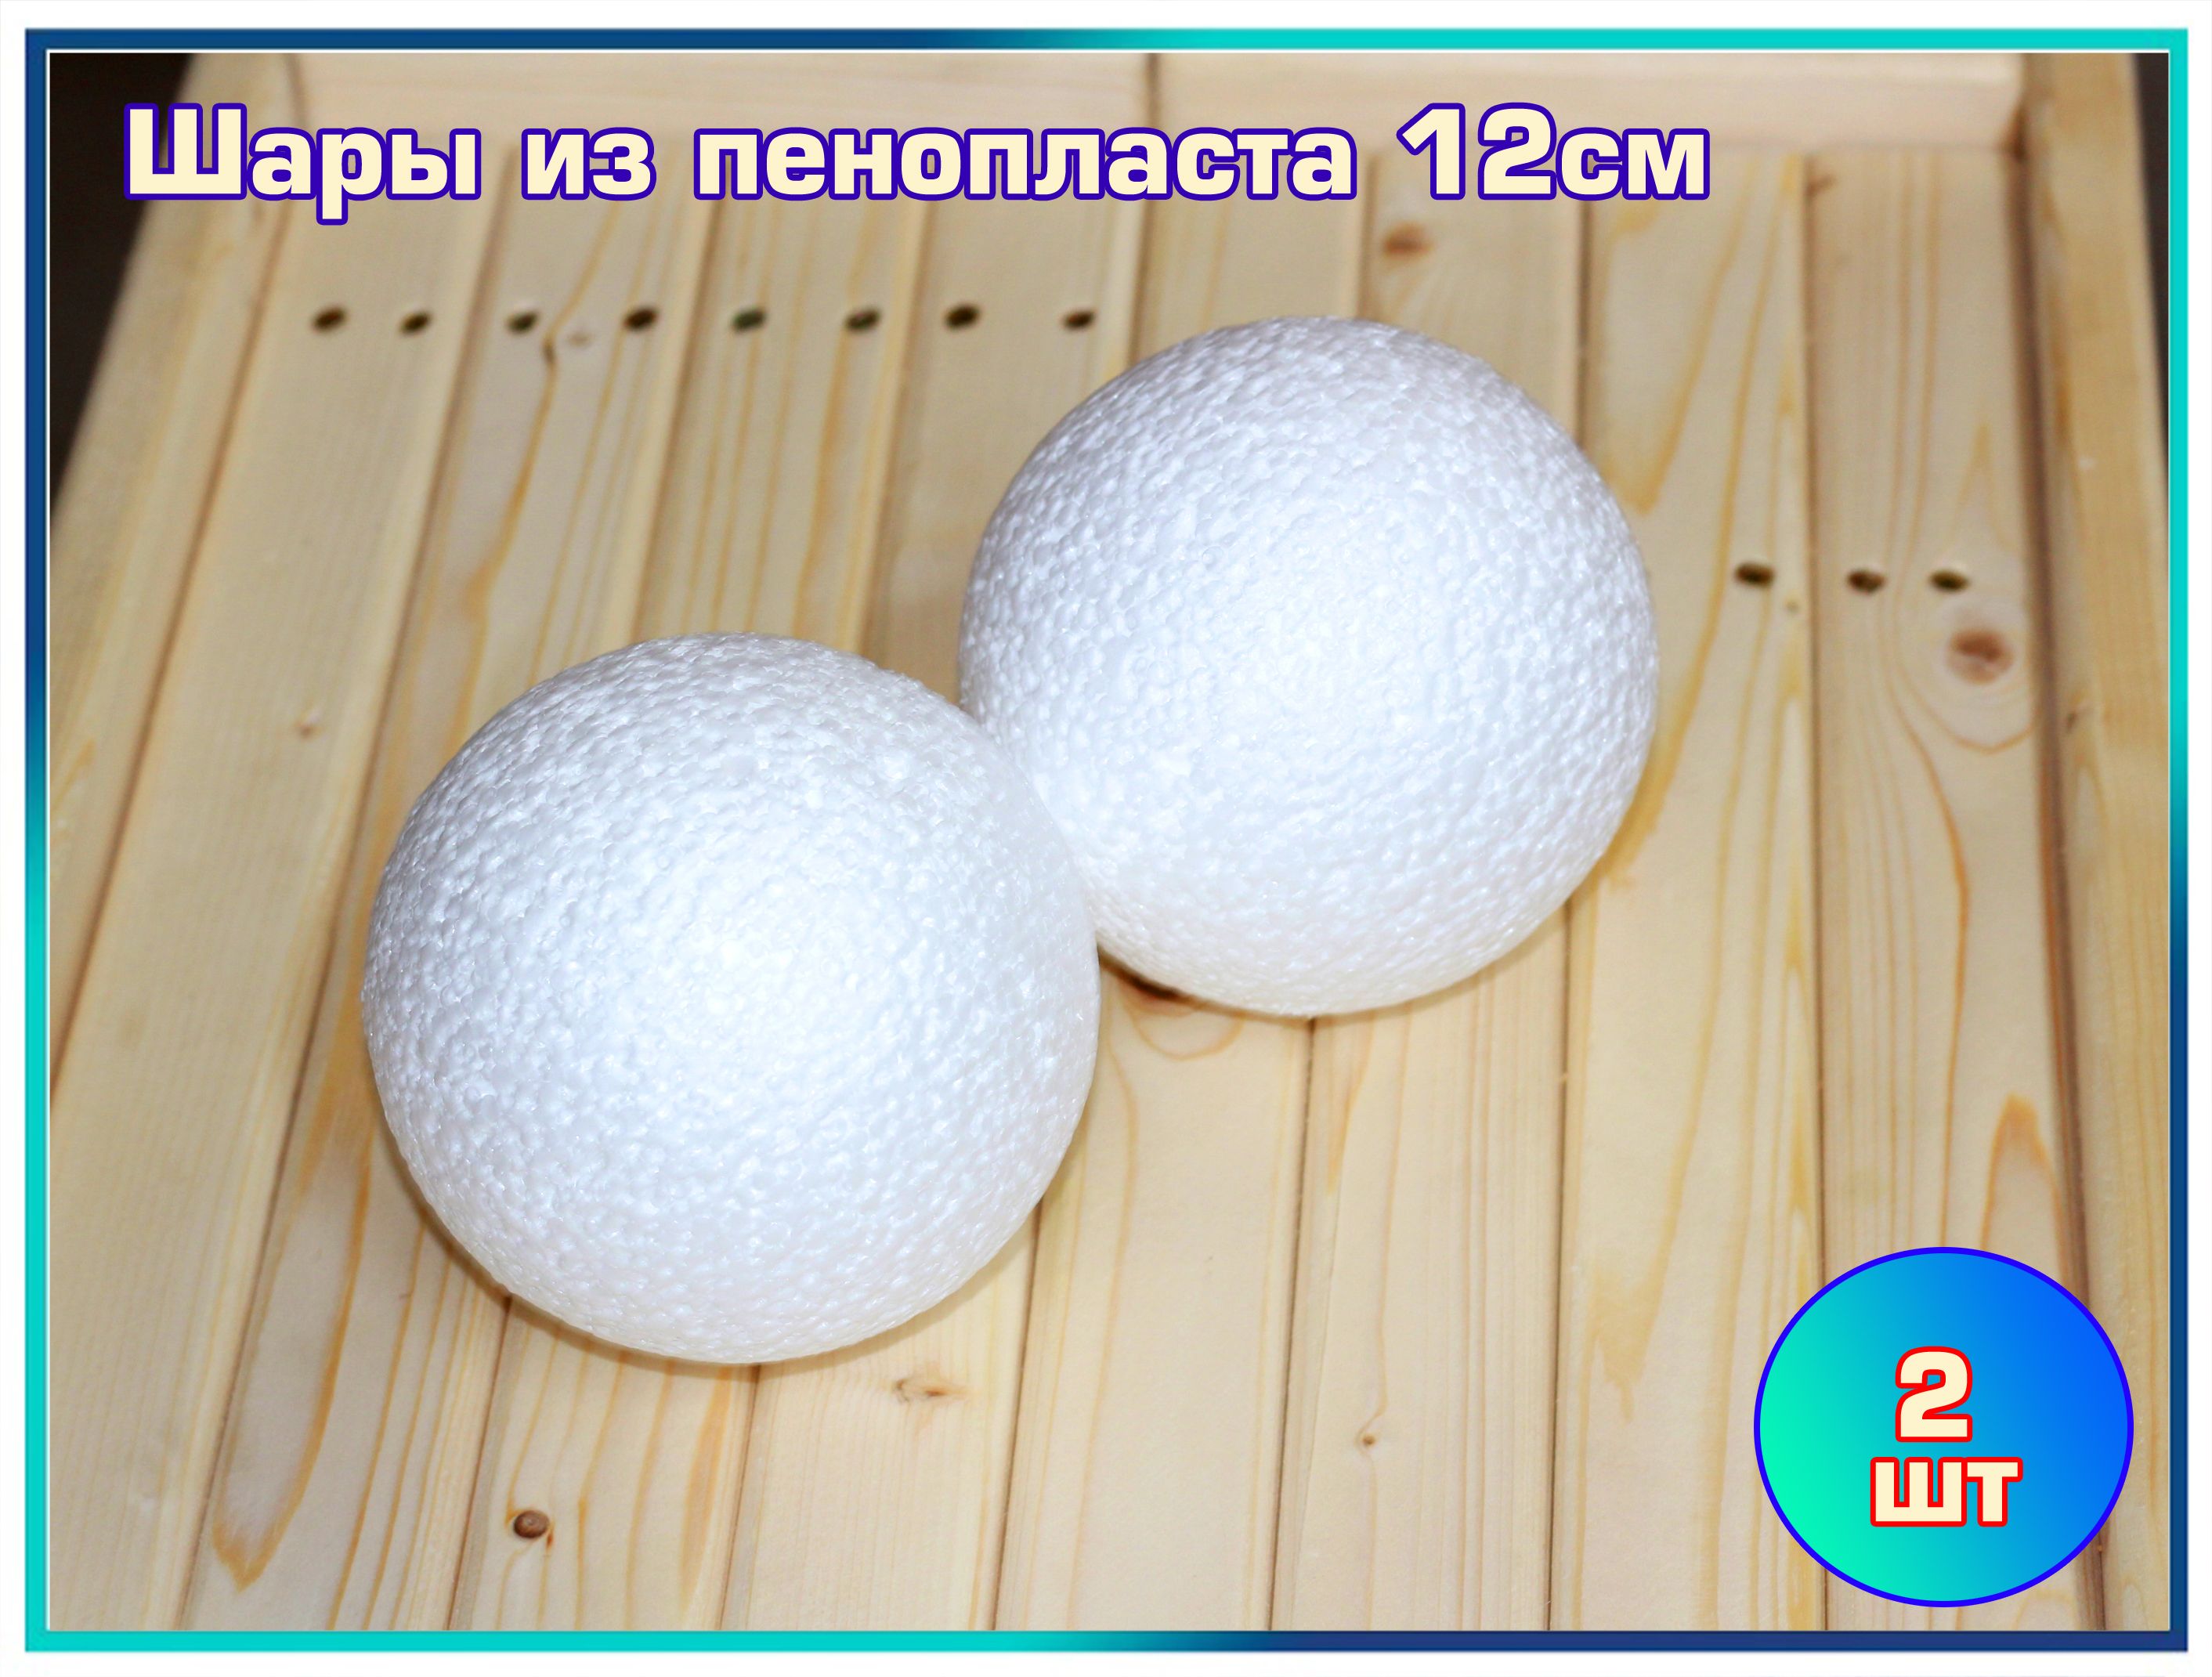 Как сделать шар из пенопласта своими руками / How to make a ball of foam